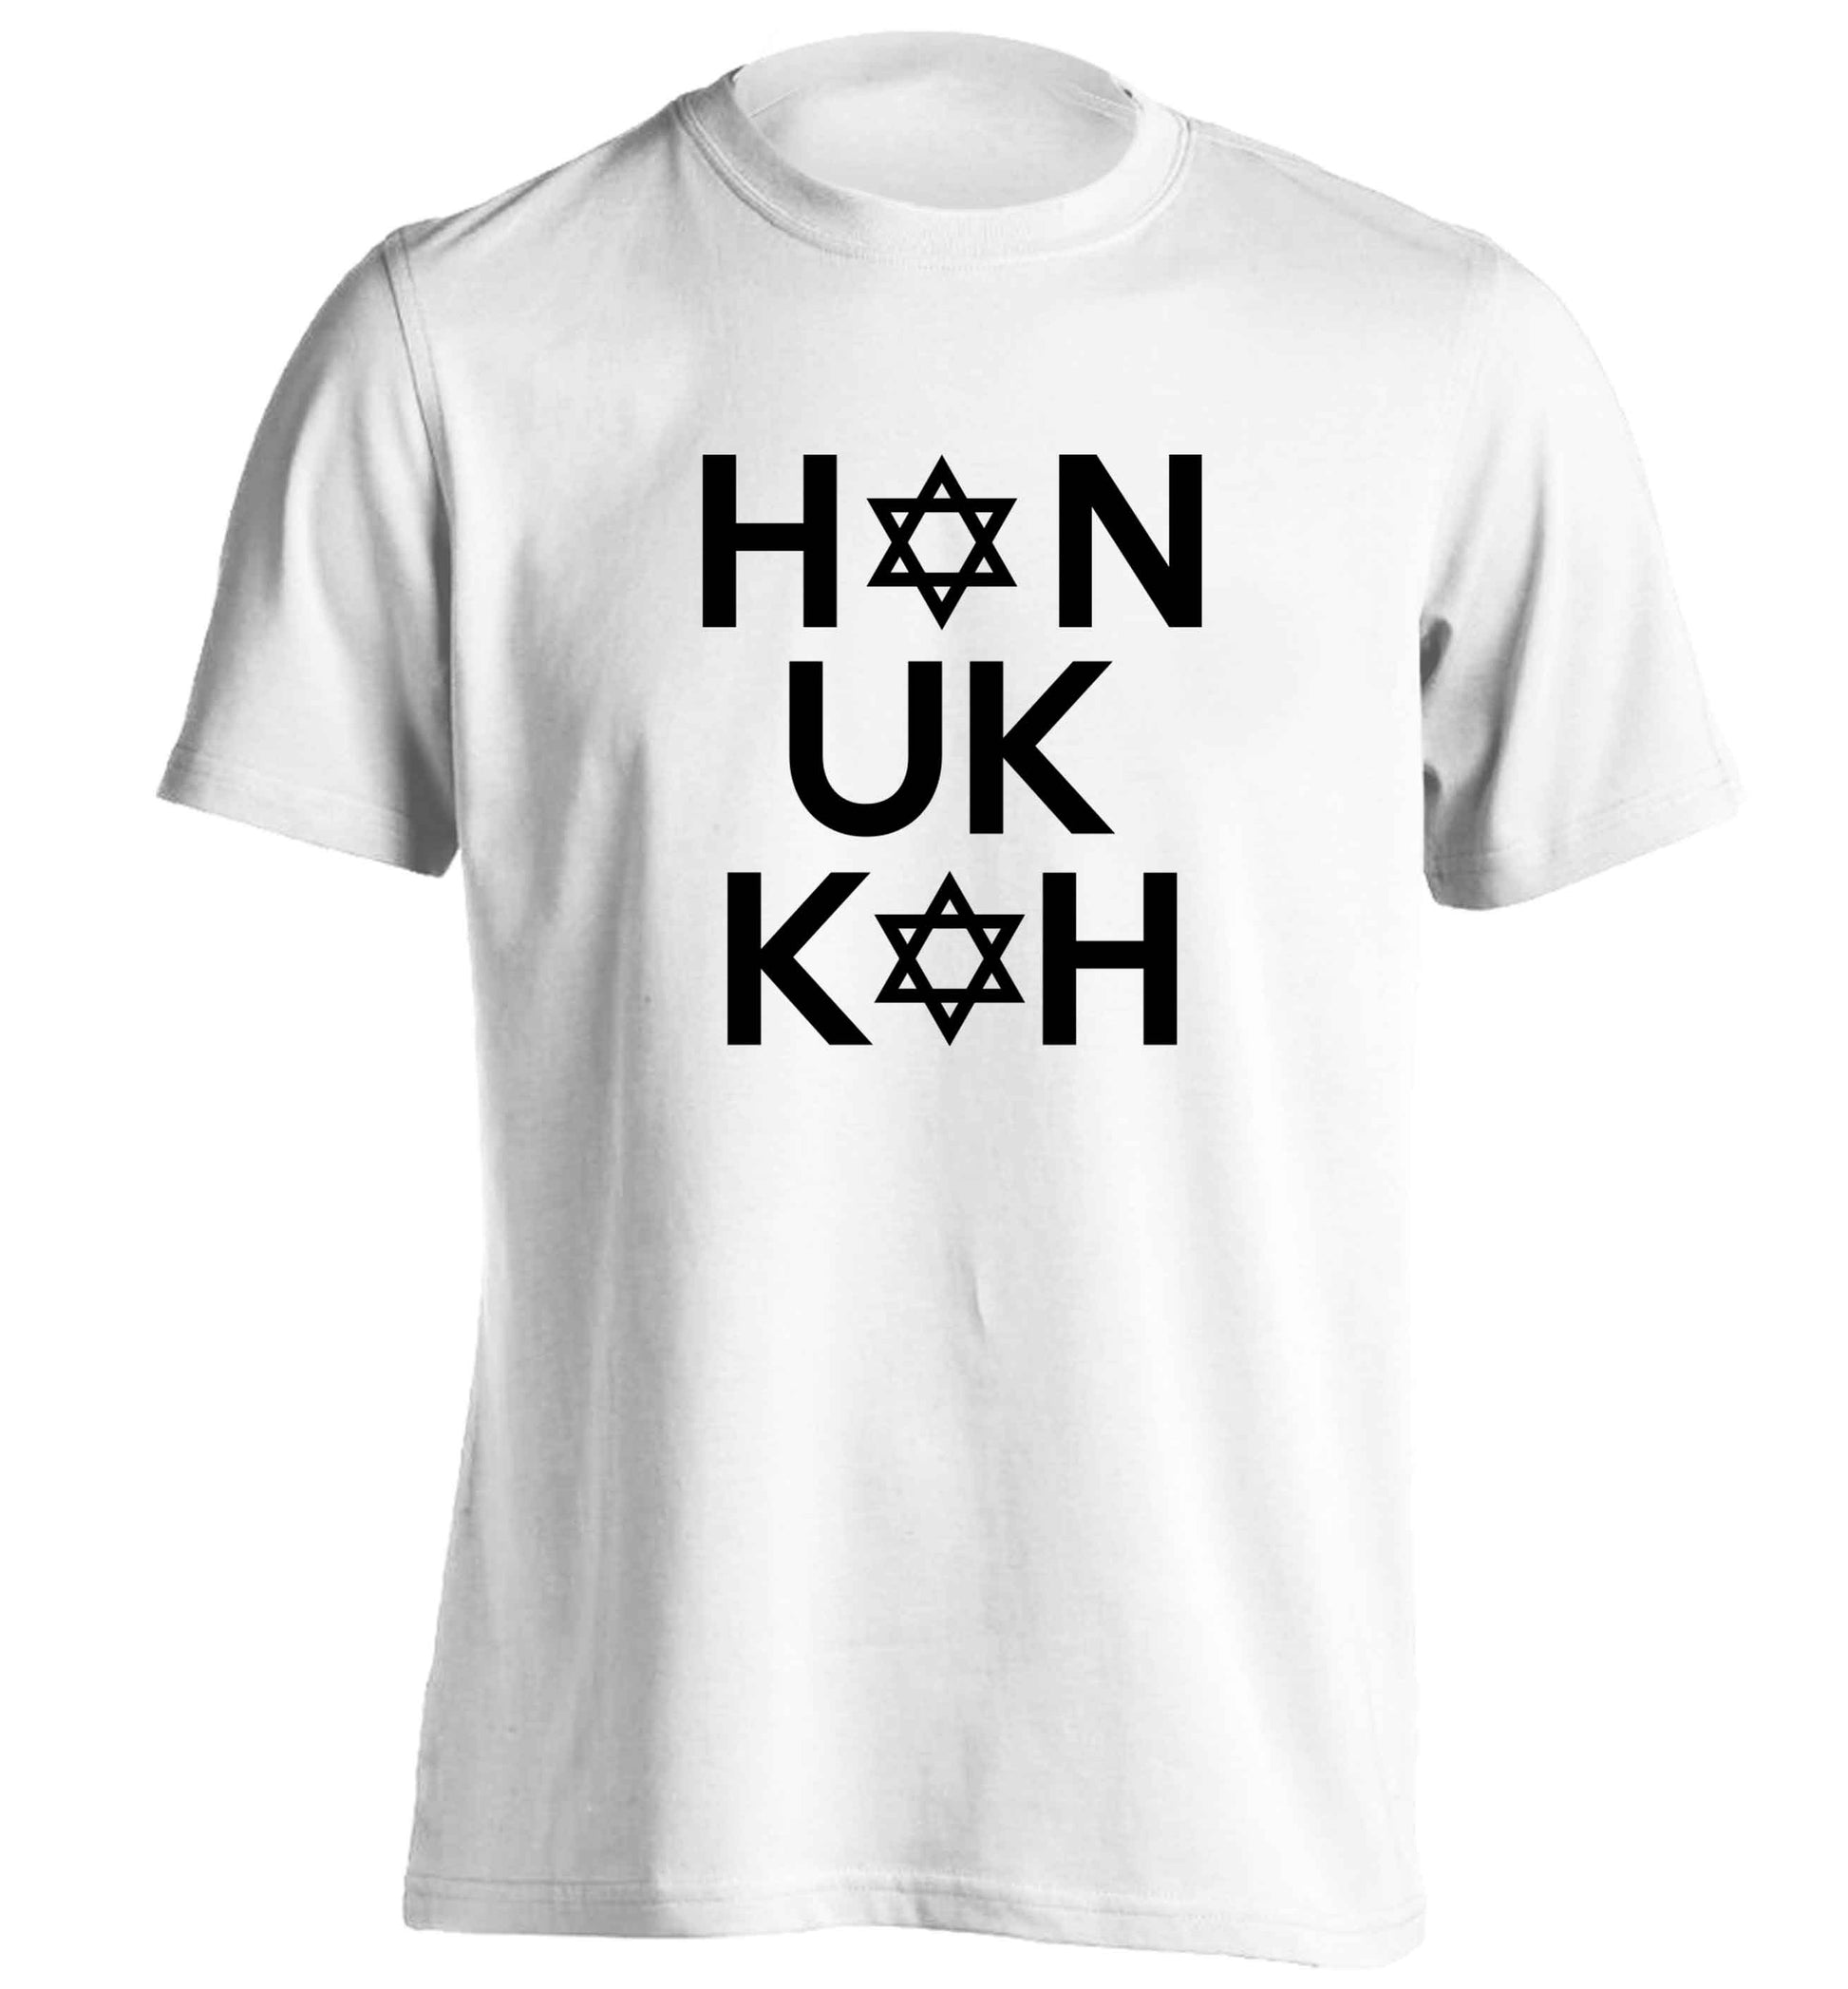 Han uk kah  Hanukkah star of david adults unisex white Tshirt 2XL